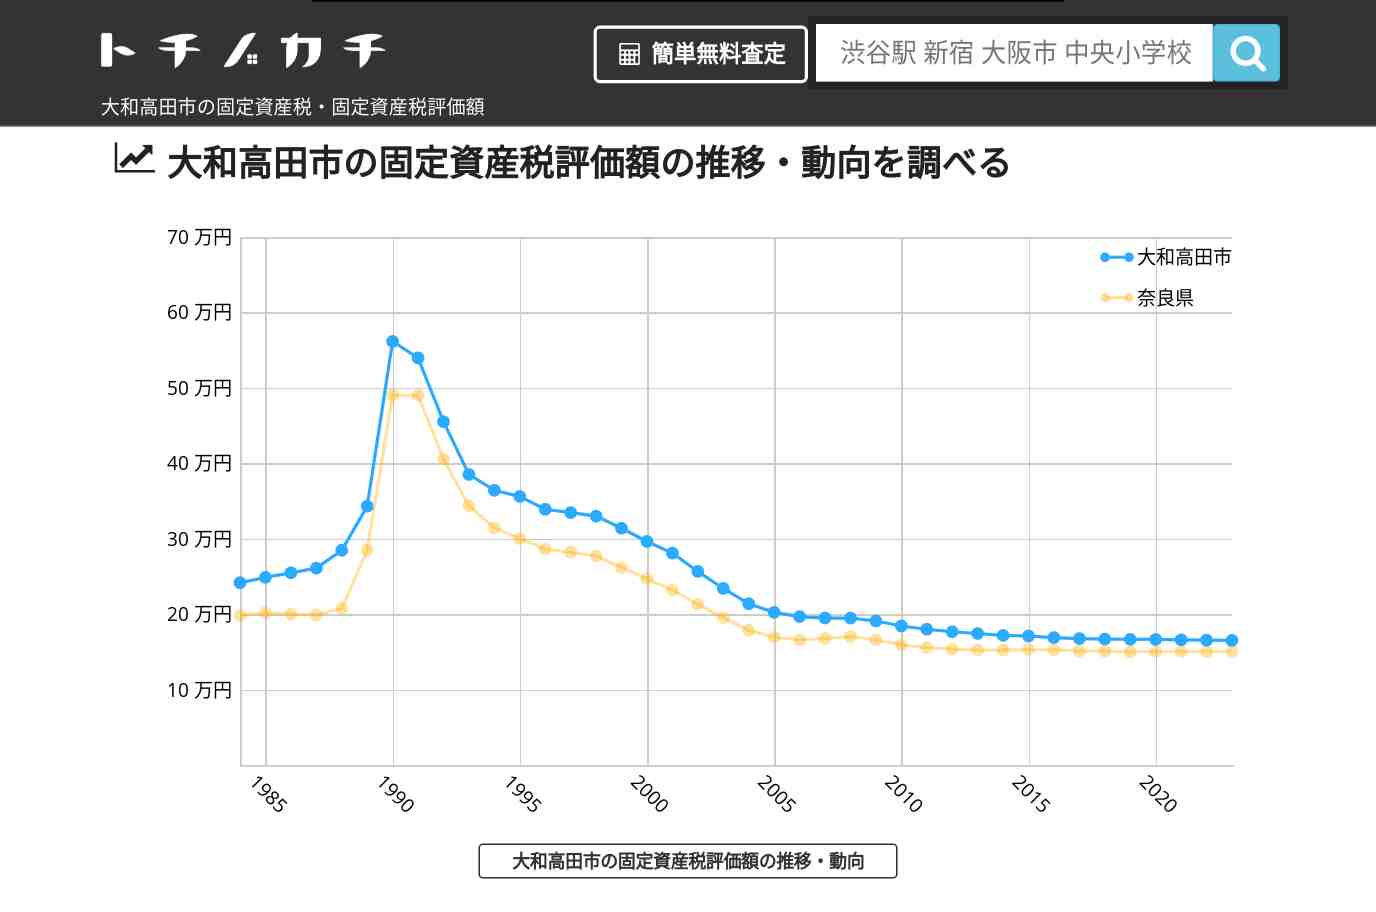 陵西小学校(奈良県 大和高田市)周辺の固定資産税・固定資産税評価額 | トチノカチ